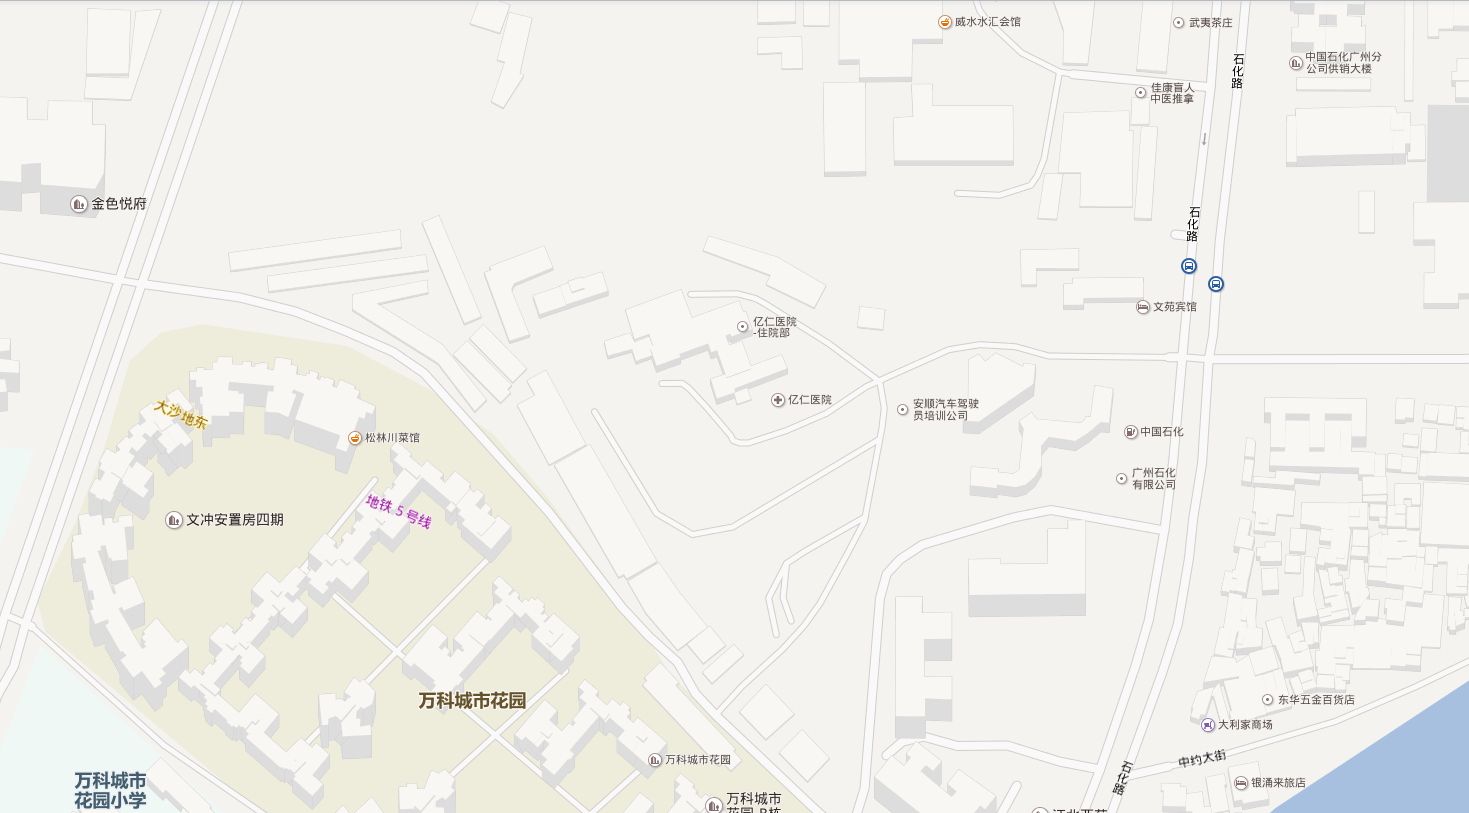 广 州 亿 仁 医 院 图 1-1 广 州 亿 仁 医 院 地 理 位 置 图 1.2.